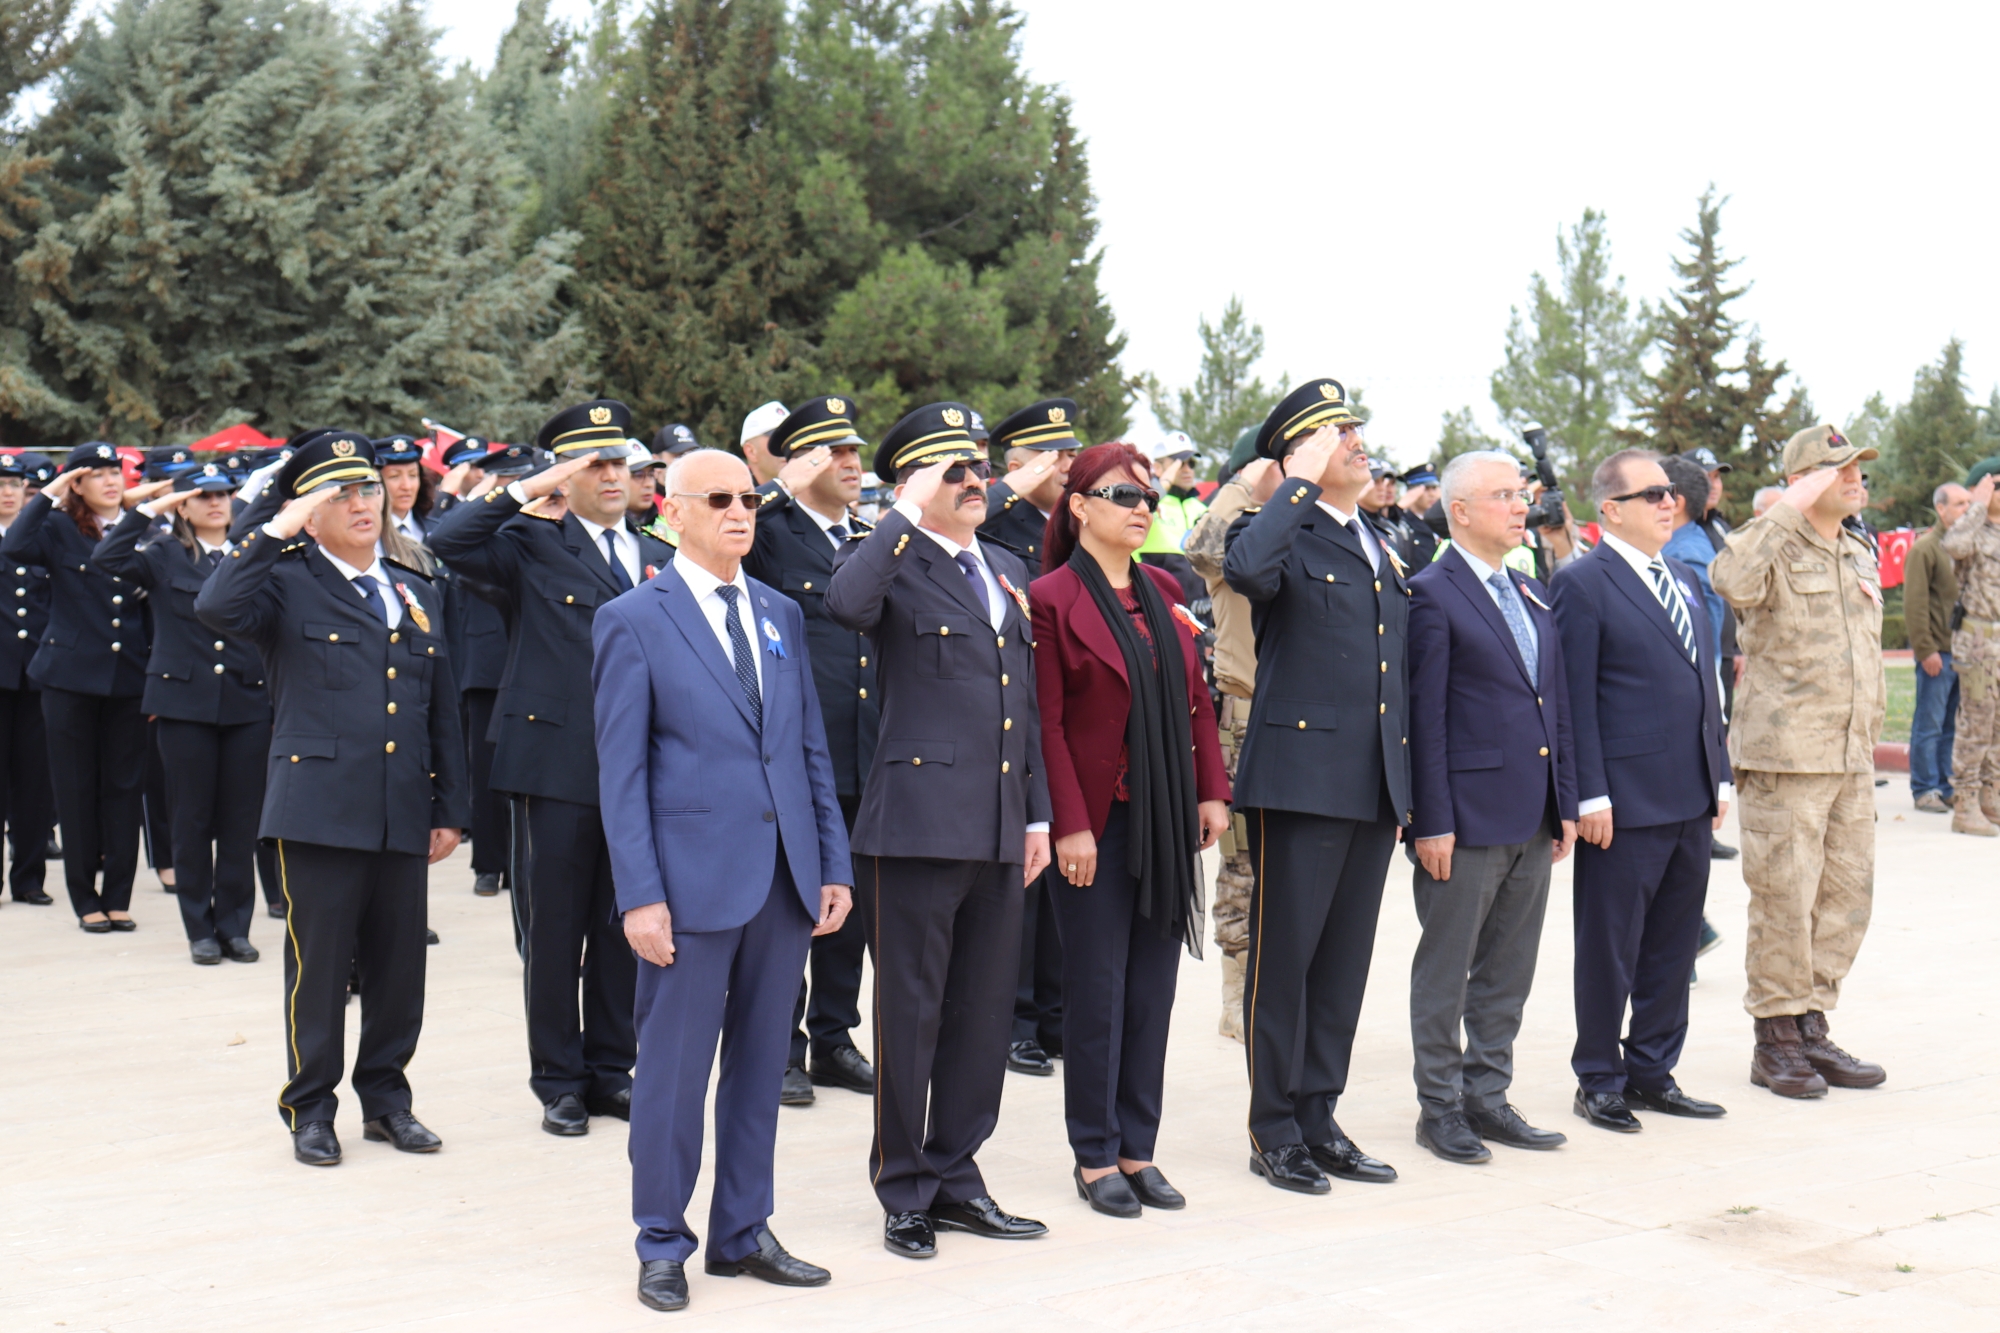 Türk Polis Teşkilatı’nın 177. Kuruluş Yıl Dönümü ve Polis Haftası dolayısıyla ilk tören Malatya Şehitliğinde düzenlendi ve şehitlerin mezarları ziyaret edildi.